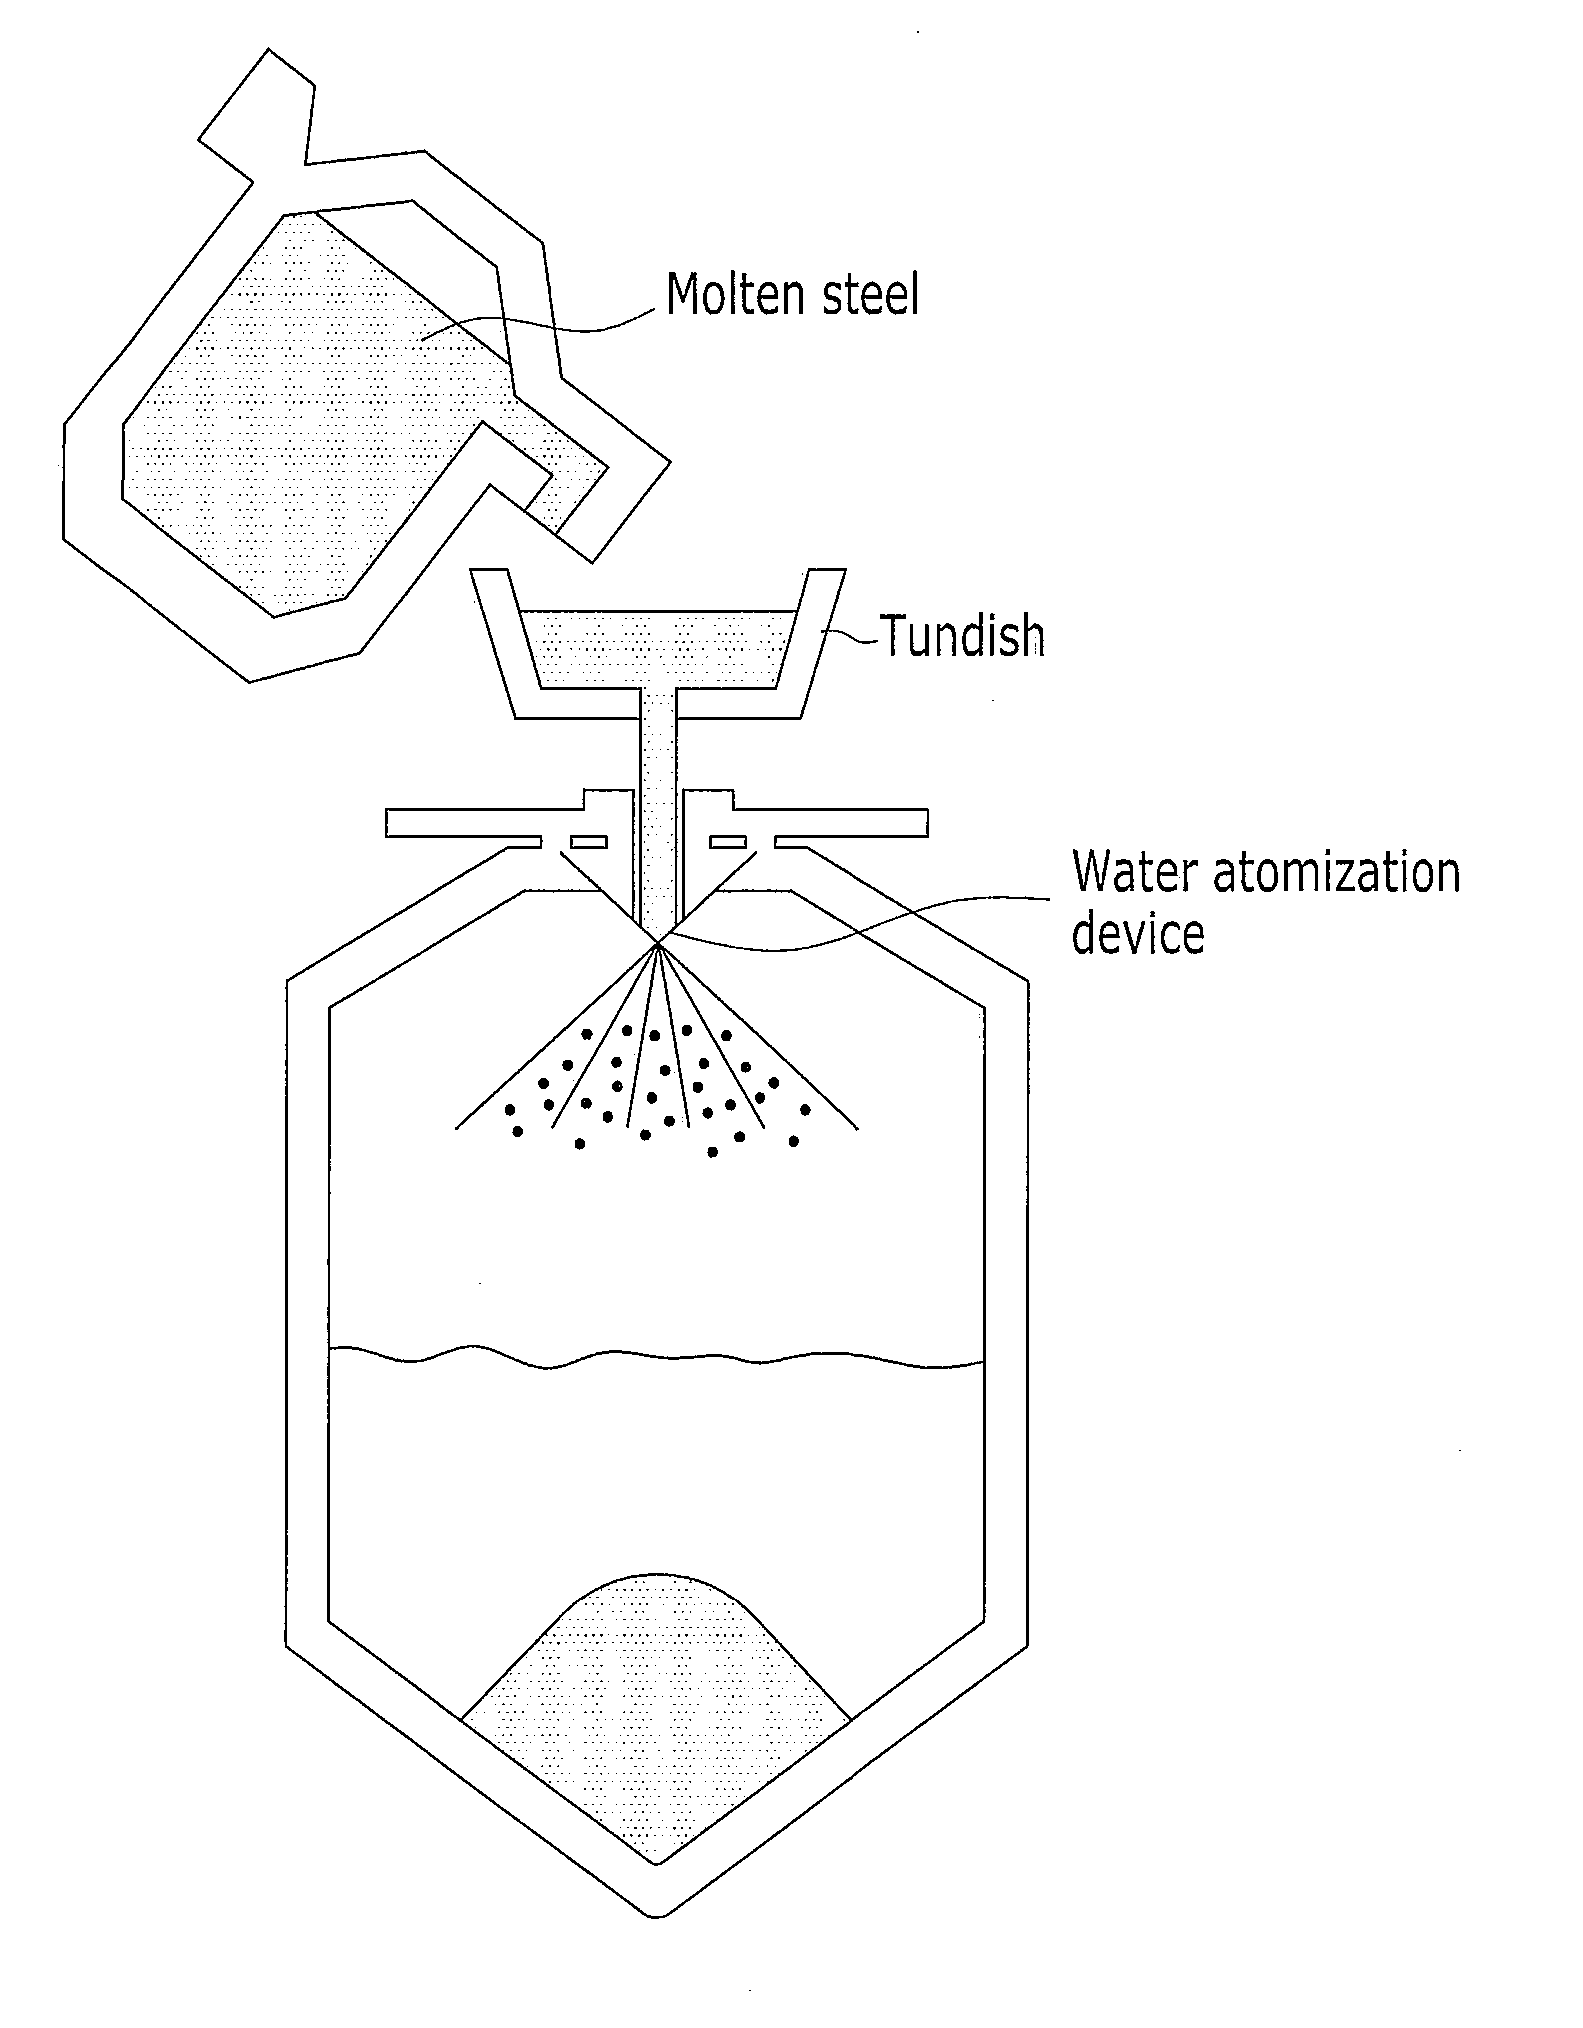 Method of Manufacturing Iron-Based Powder